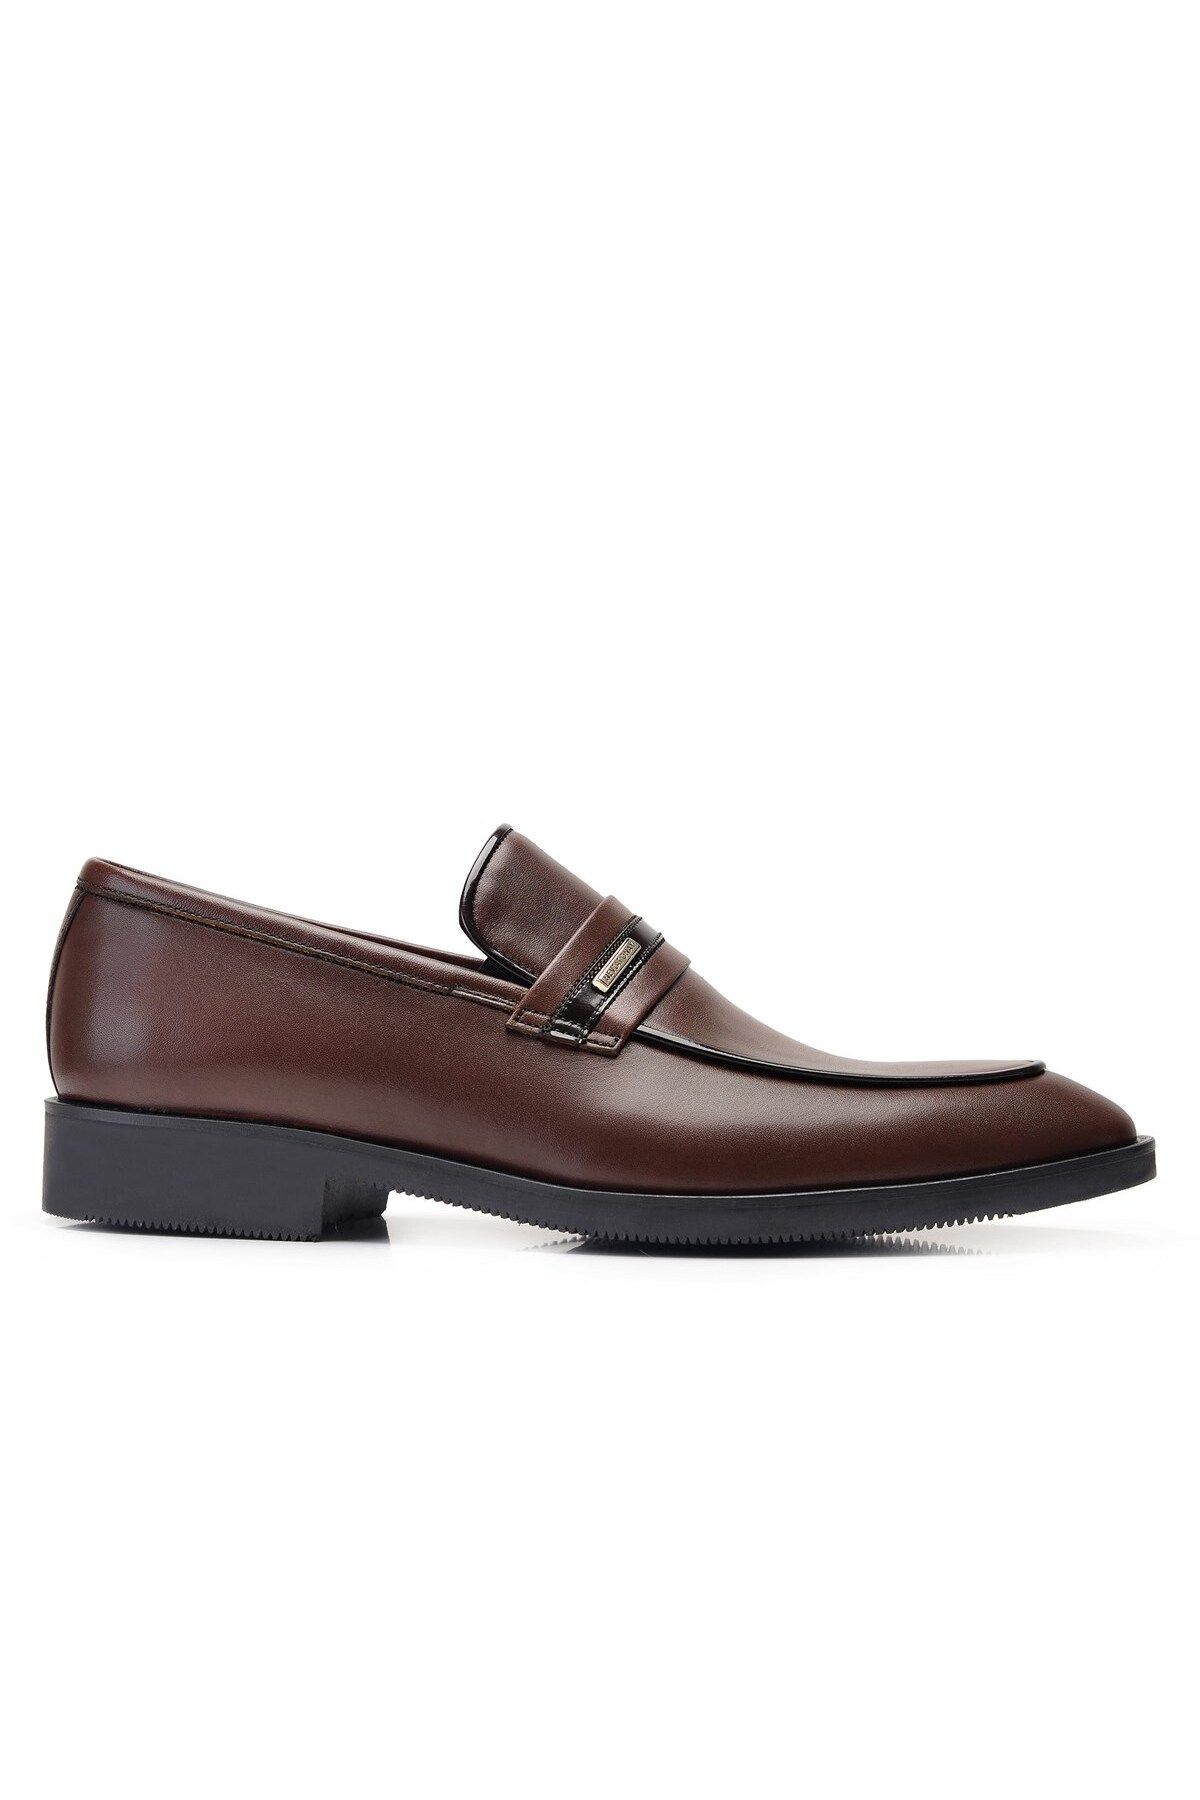 Nevzat Onay Kahverengi Klasik Loafer Erkek Ayakkabı -11888-